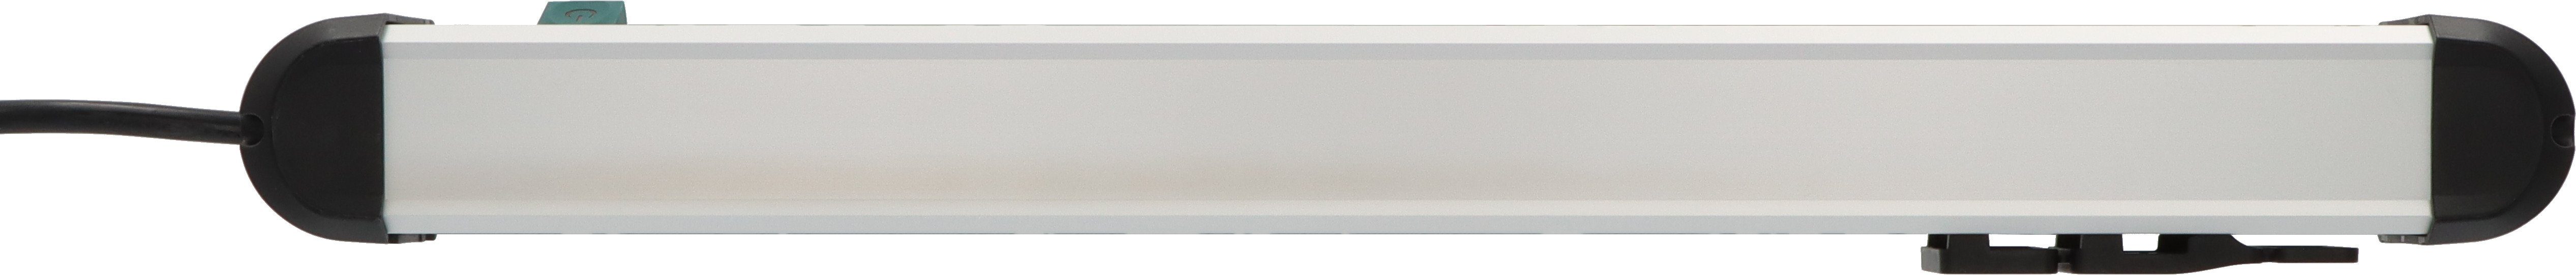 (Kabellänge m), Premium-Alu-Line Brennenstuhl Steckdosenleiste 3 mit 10-fach Schalter